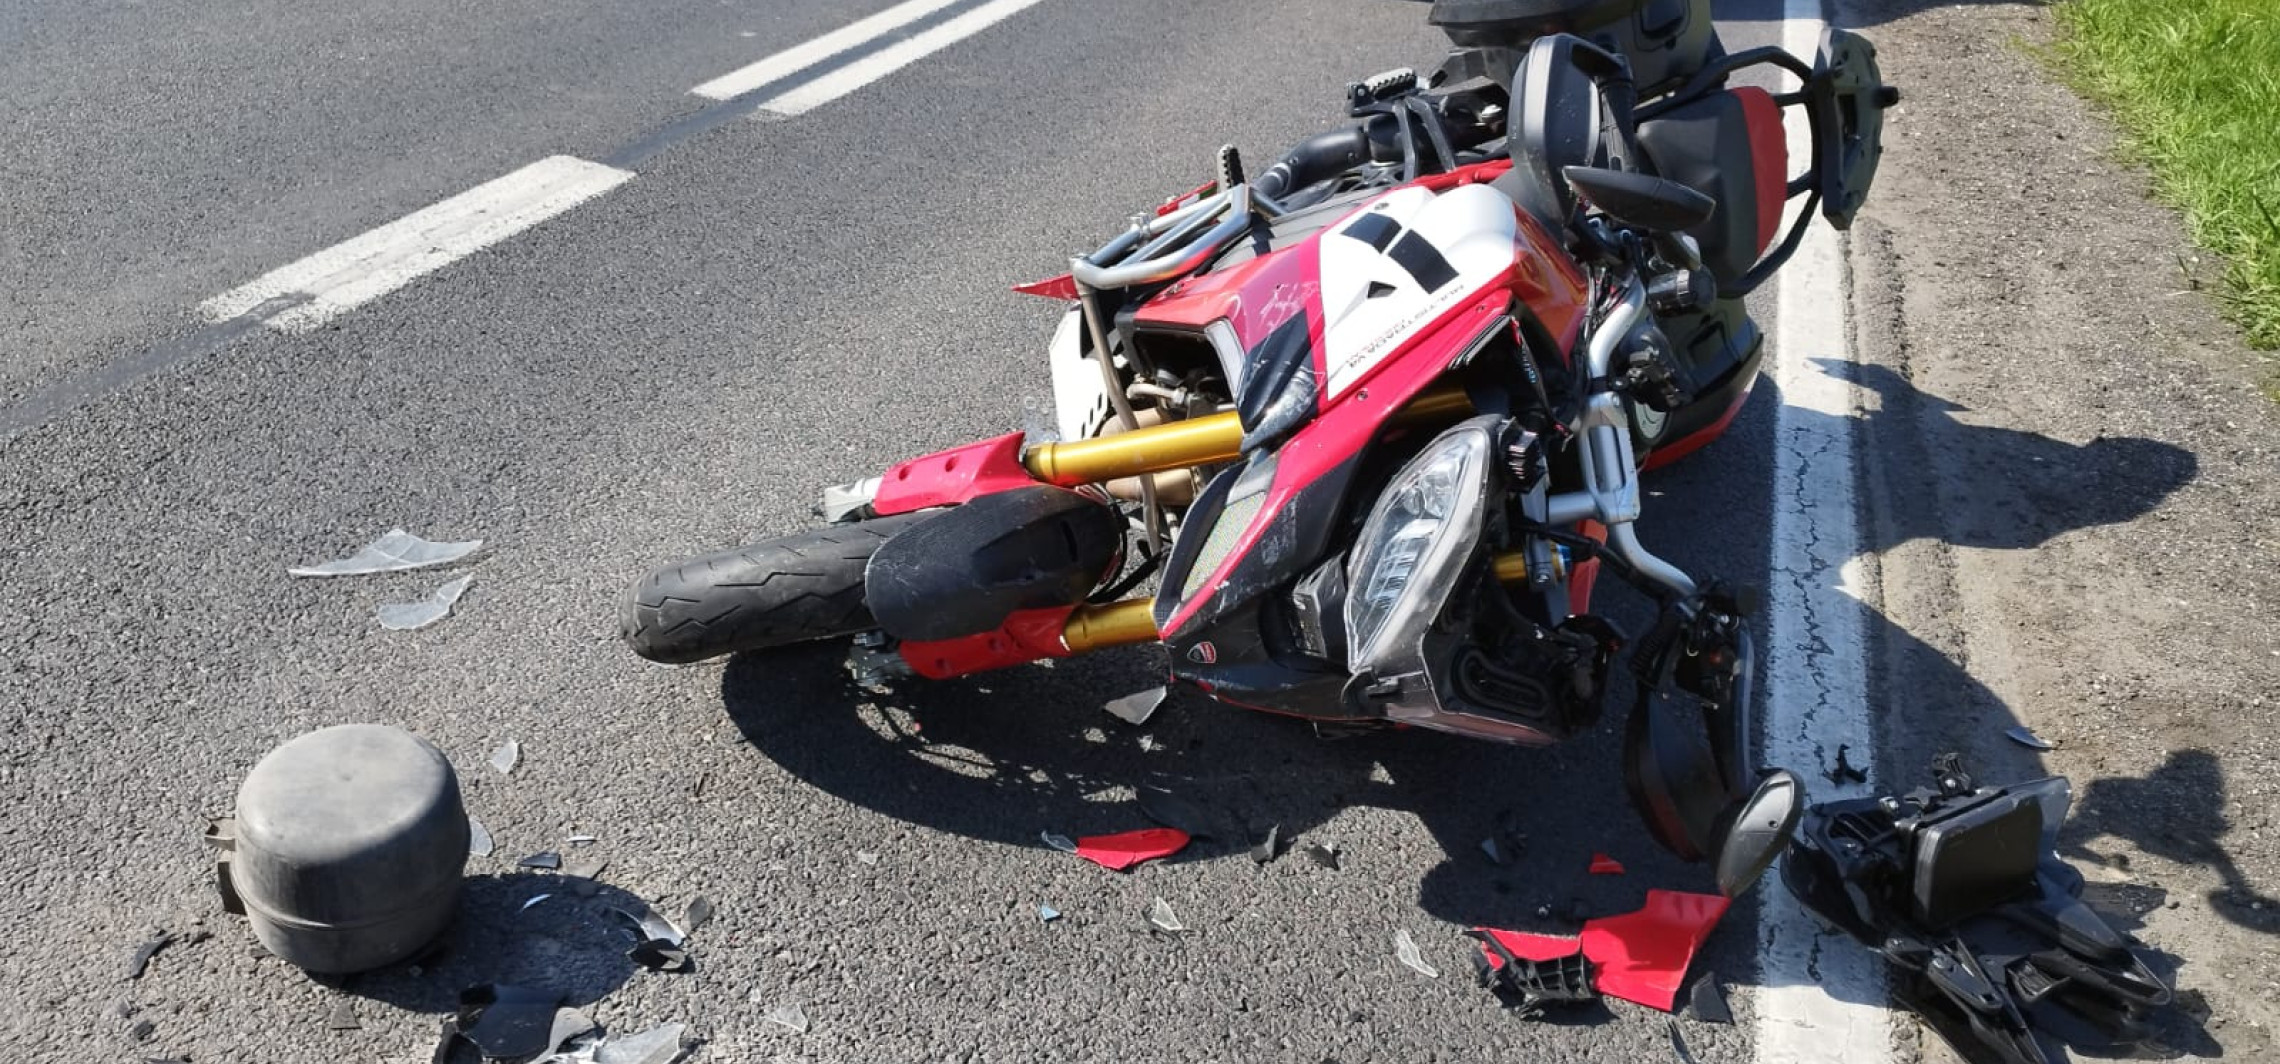 Region - Motocyklista zderzył się z dostawczakiem. Trafił do szpitala